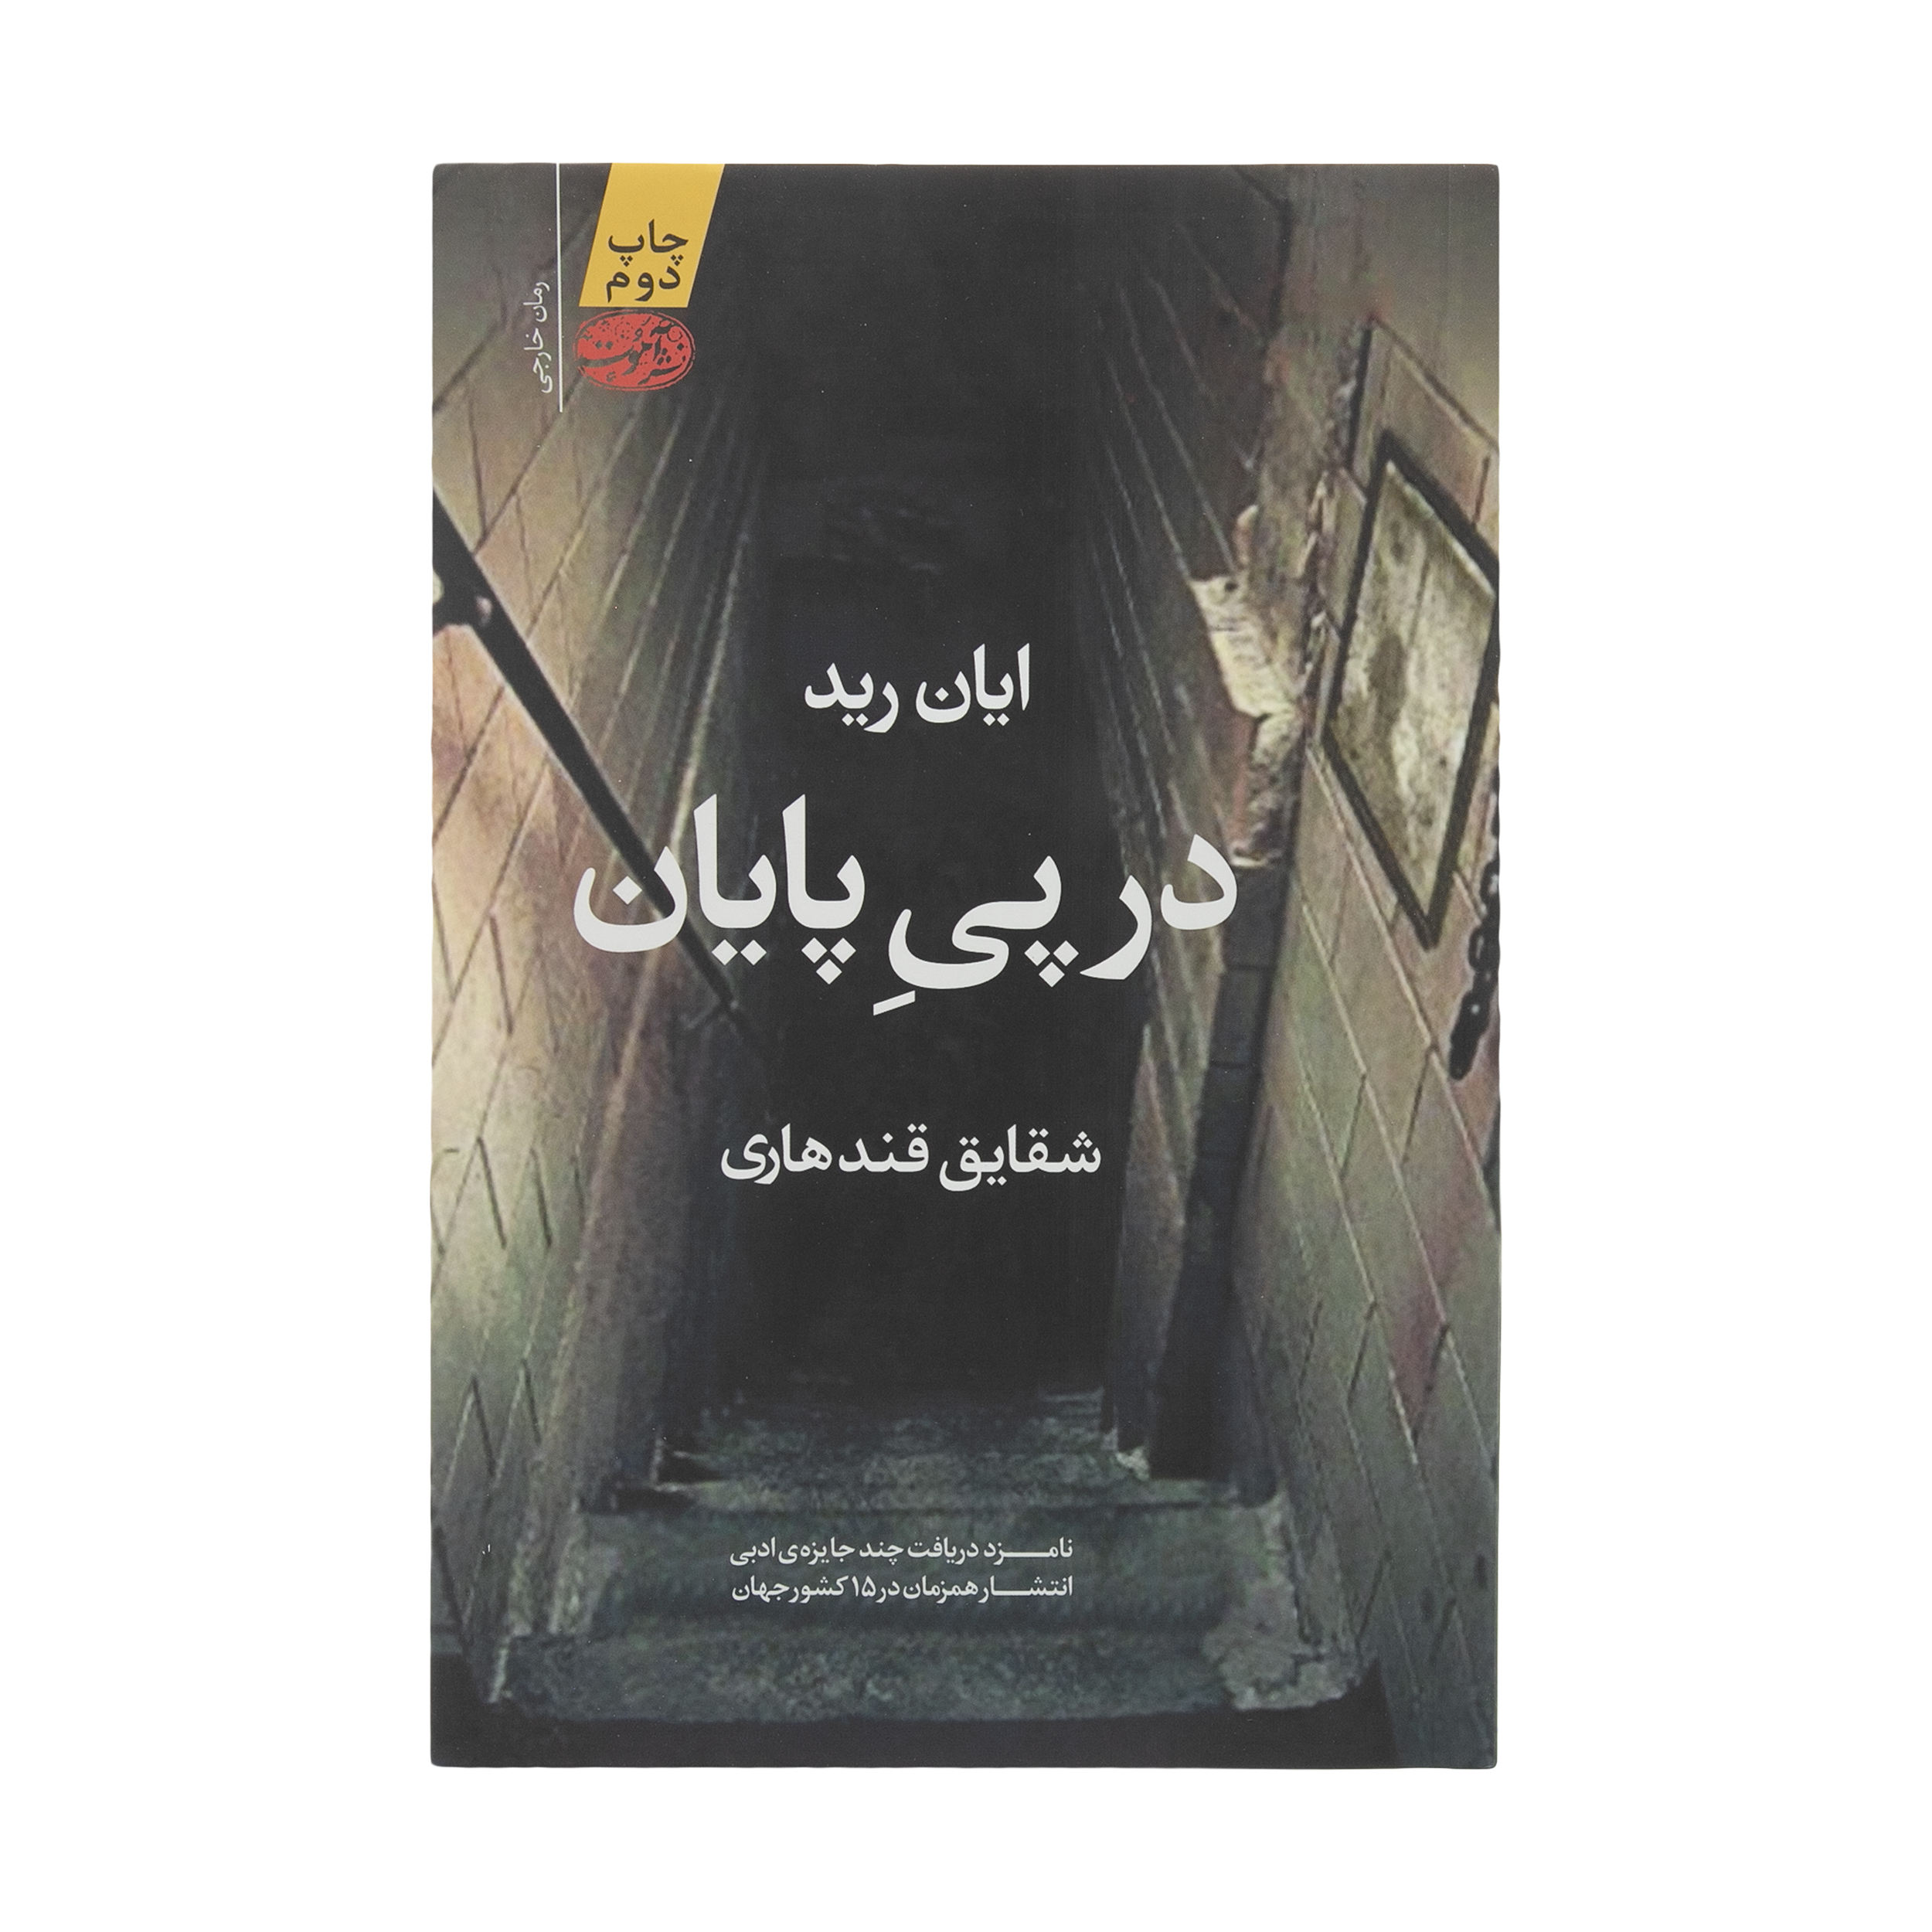 آنباکس کتاب در پی پایان اثر ایان رید نشر آموت توسط ملیکا ک در تاریخ ۲۱ مهر ۱۴۰۰